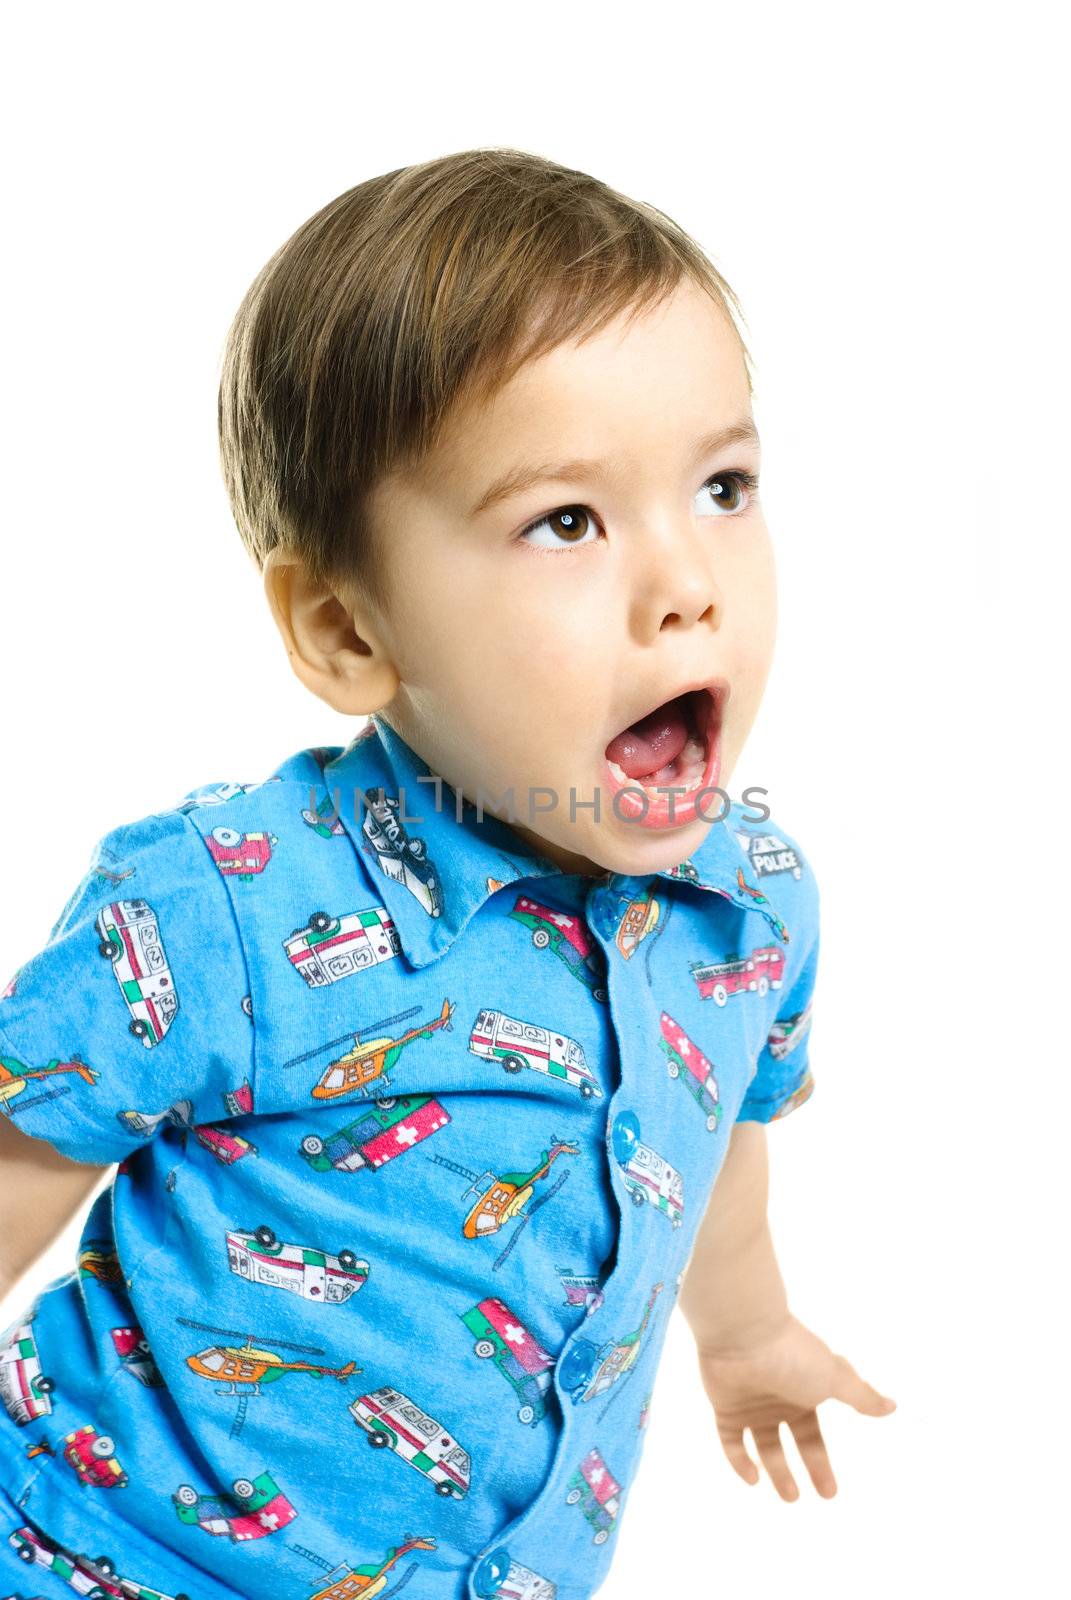 screaming little boy by lanak